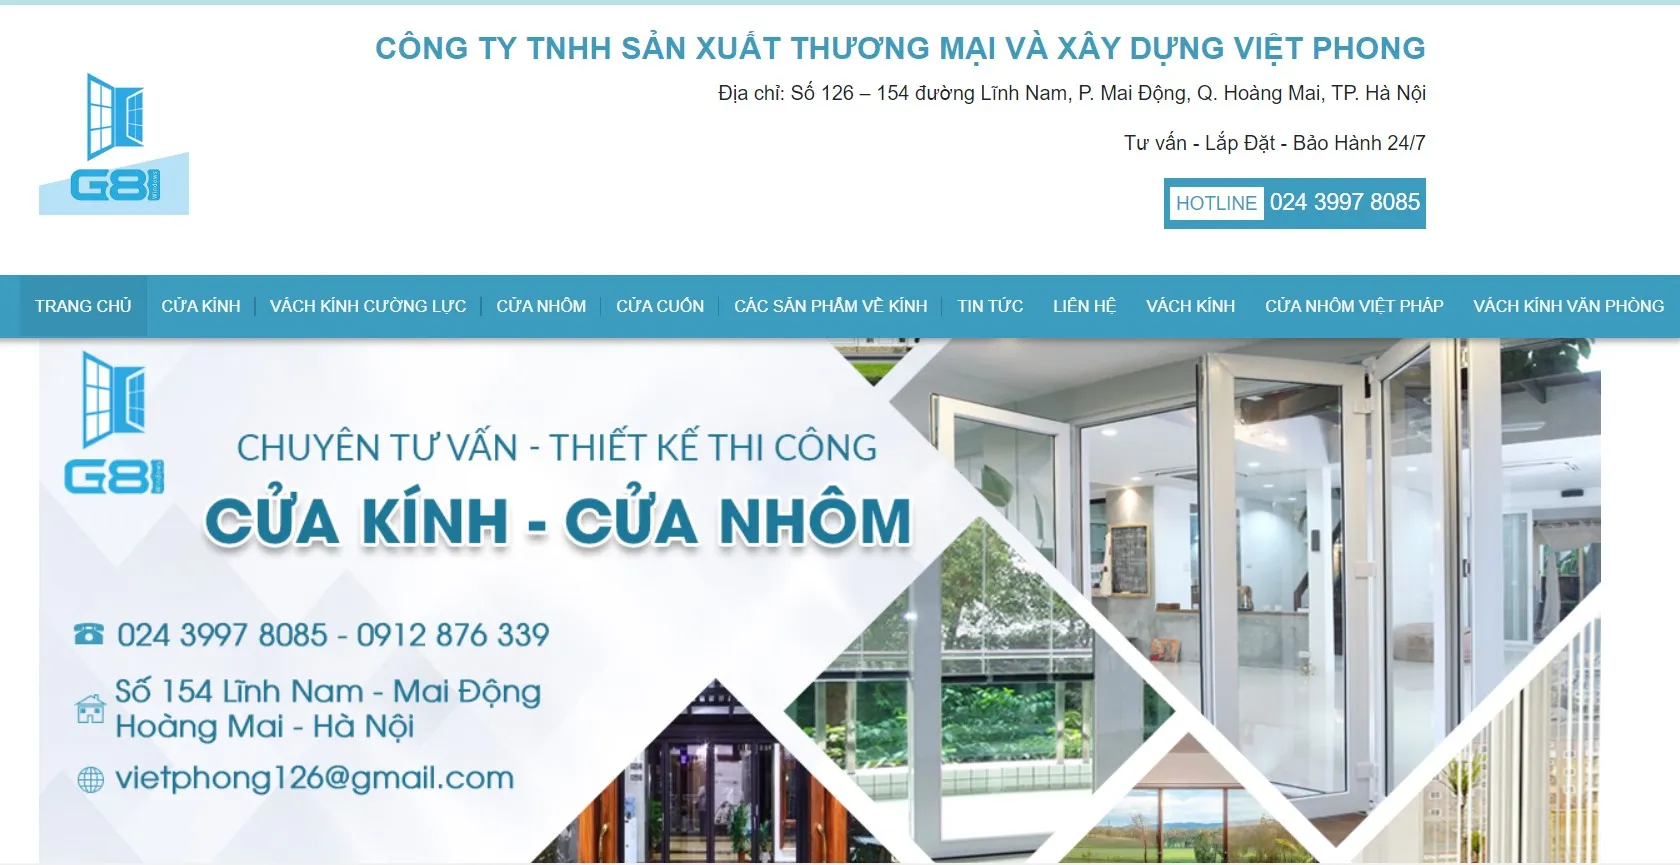 Công ty Việt Phong chuyên cung cấp cửa nhôm Xingfa tại quận Tây Hồ